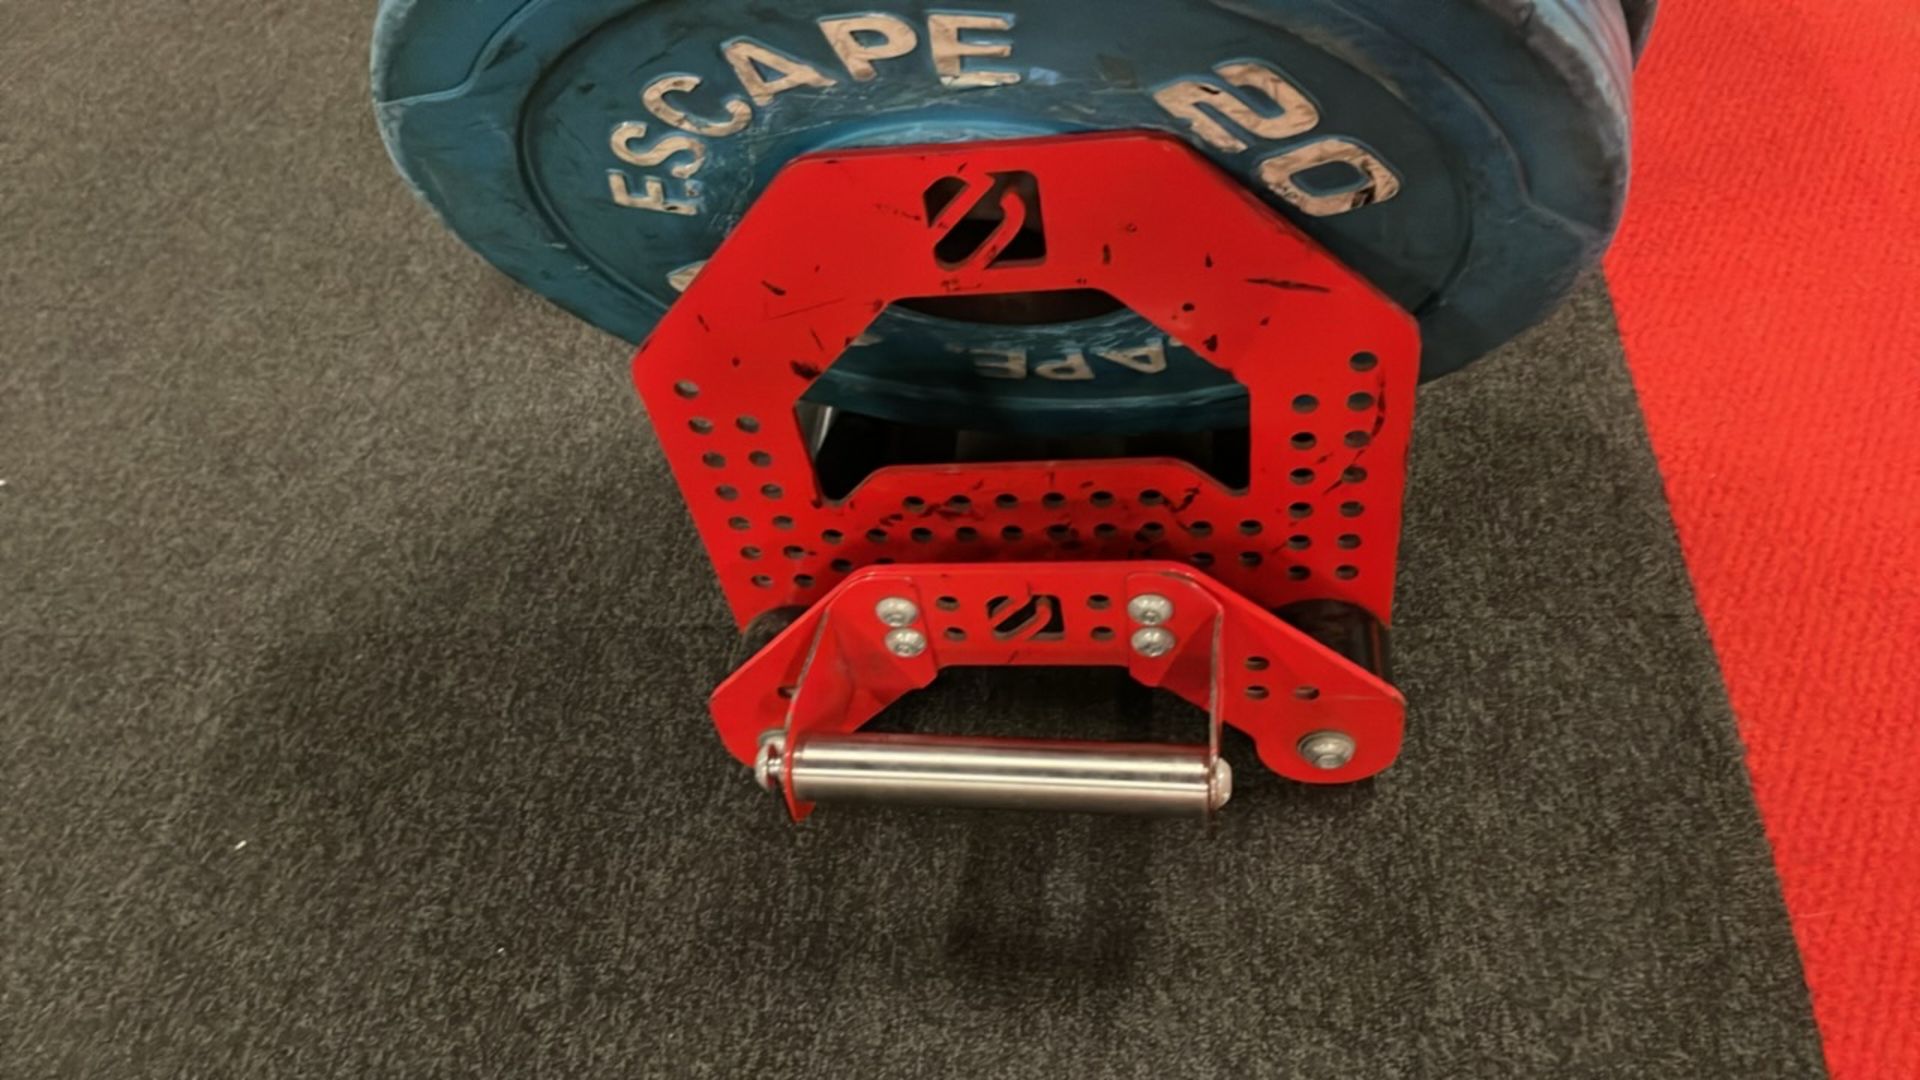 Escape Bumper Plates & Stand - Image 8 of 9